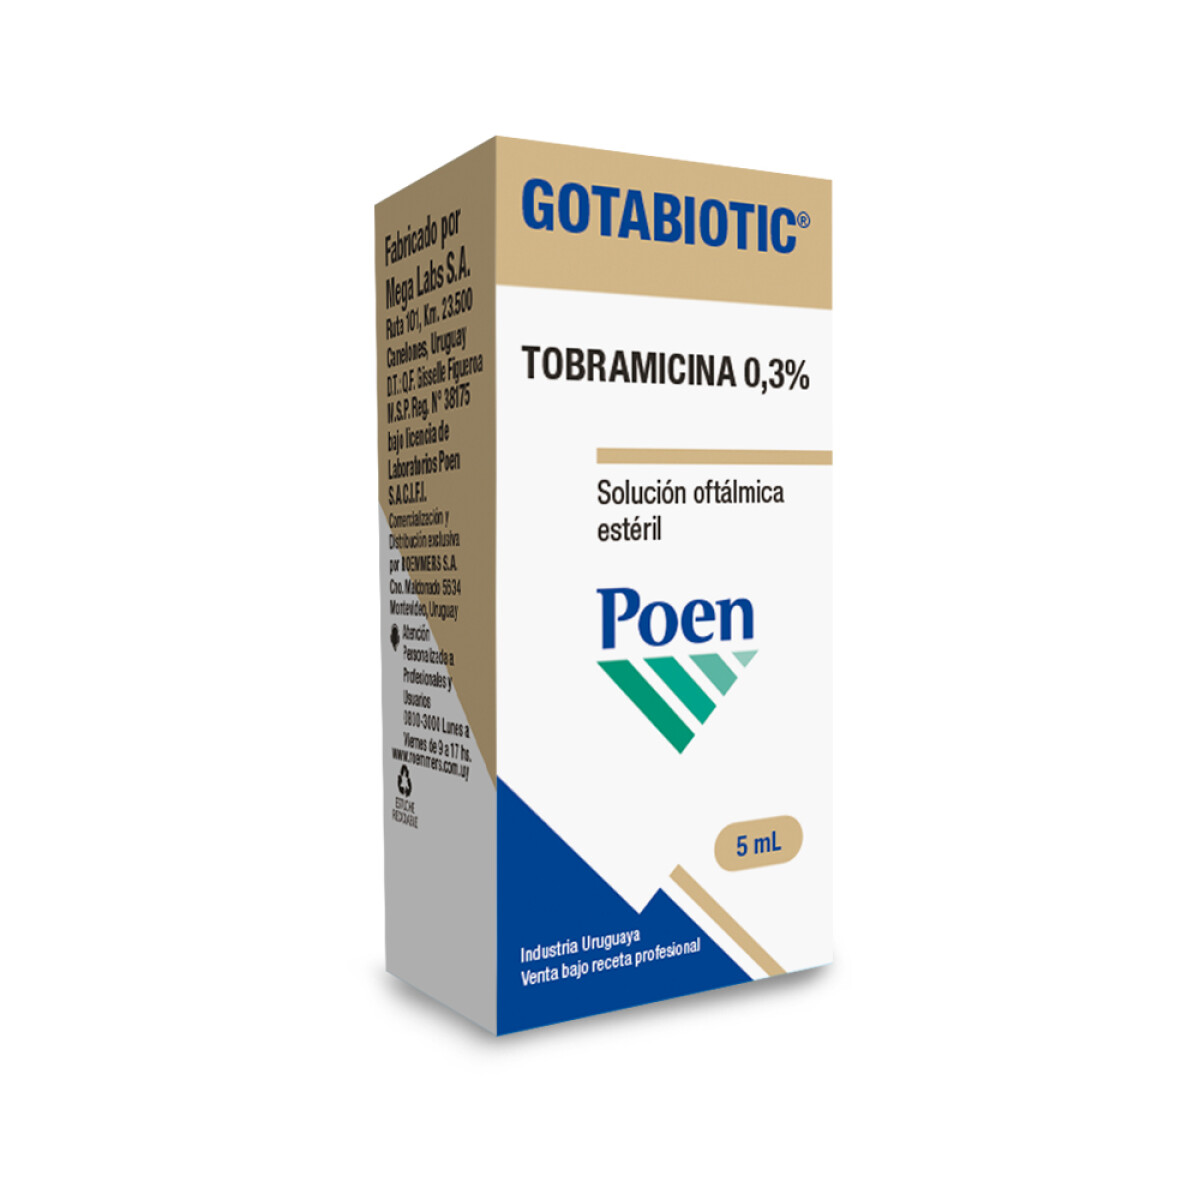 GOTABIOTIC 5 ml 